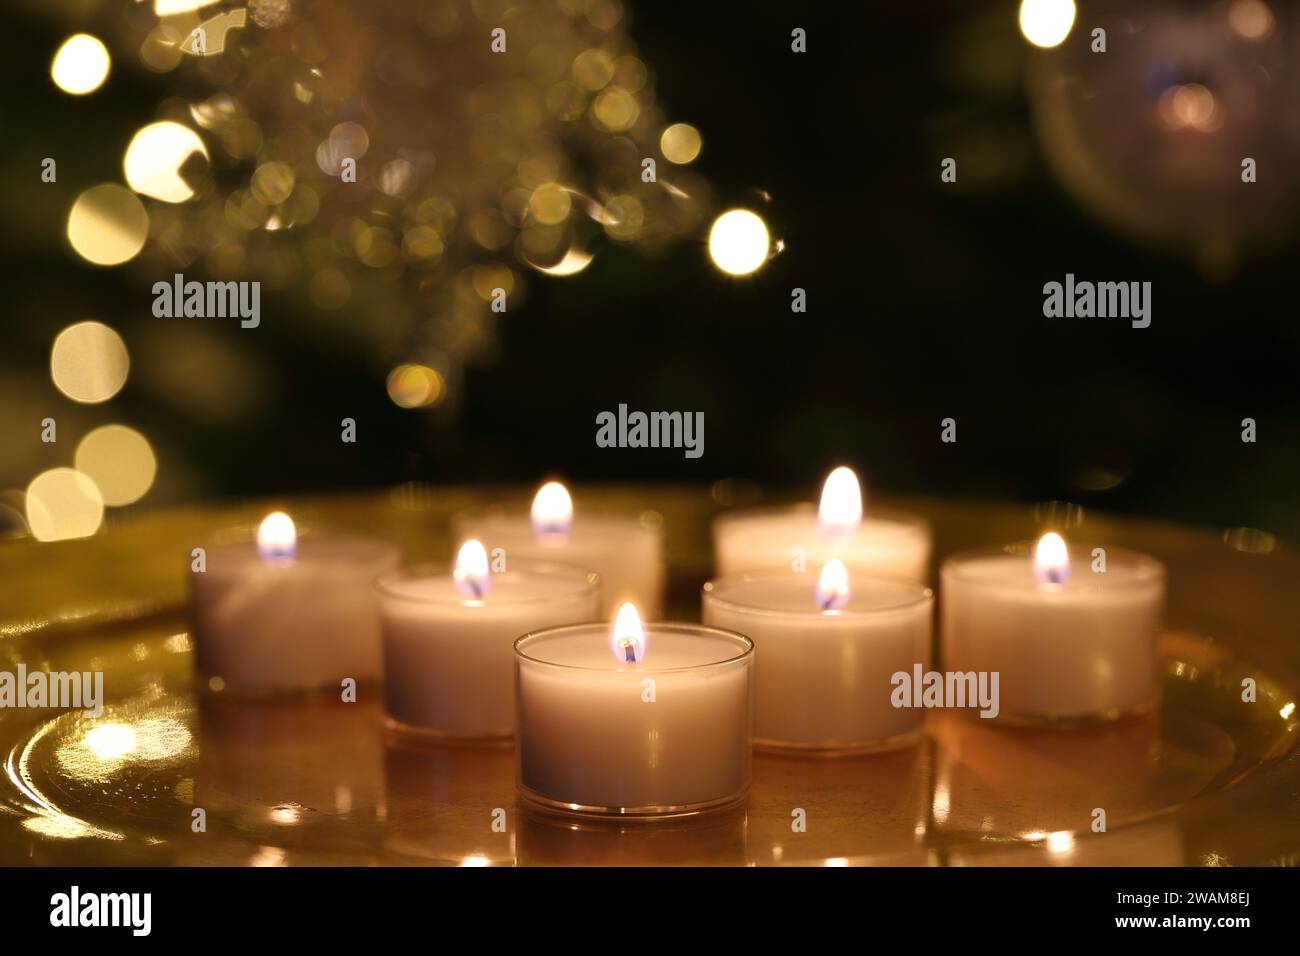 Gros plan d'un groupe de bougies chauffe-plat brûlantes sur une plaque dorée et sur fond sombre de Noël Banque D'Images